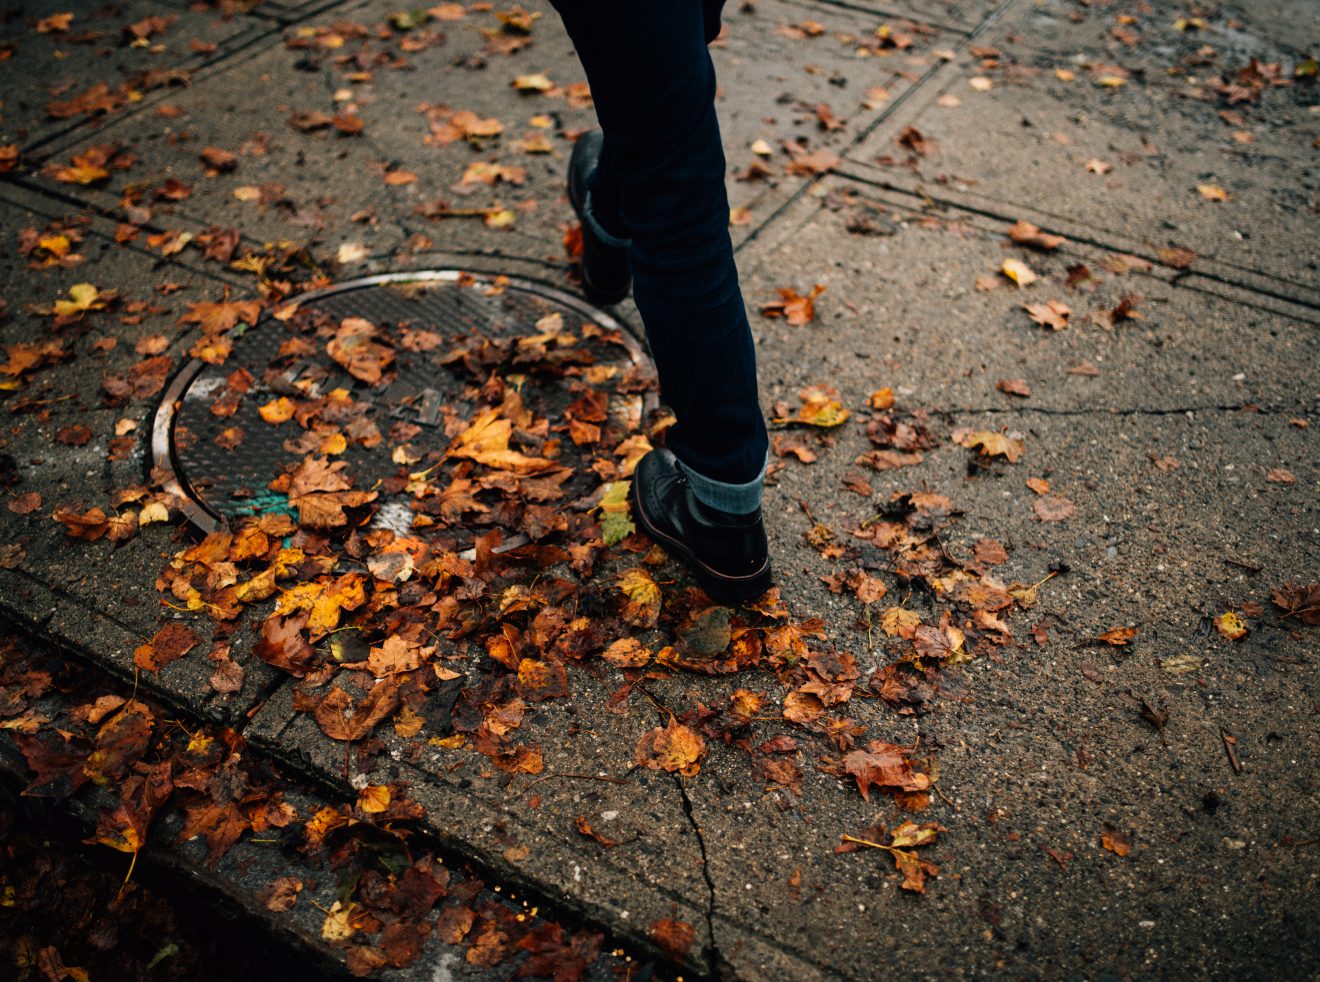 Man in boots walks on Salem sidewalk, stepping on fallen orange leaves.